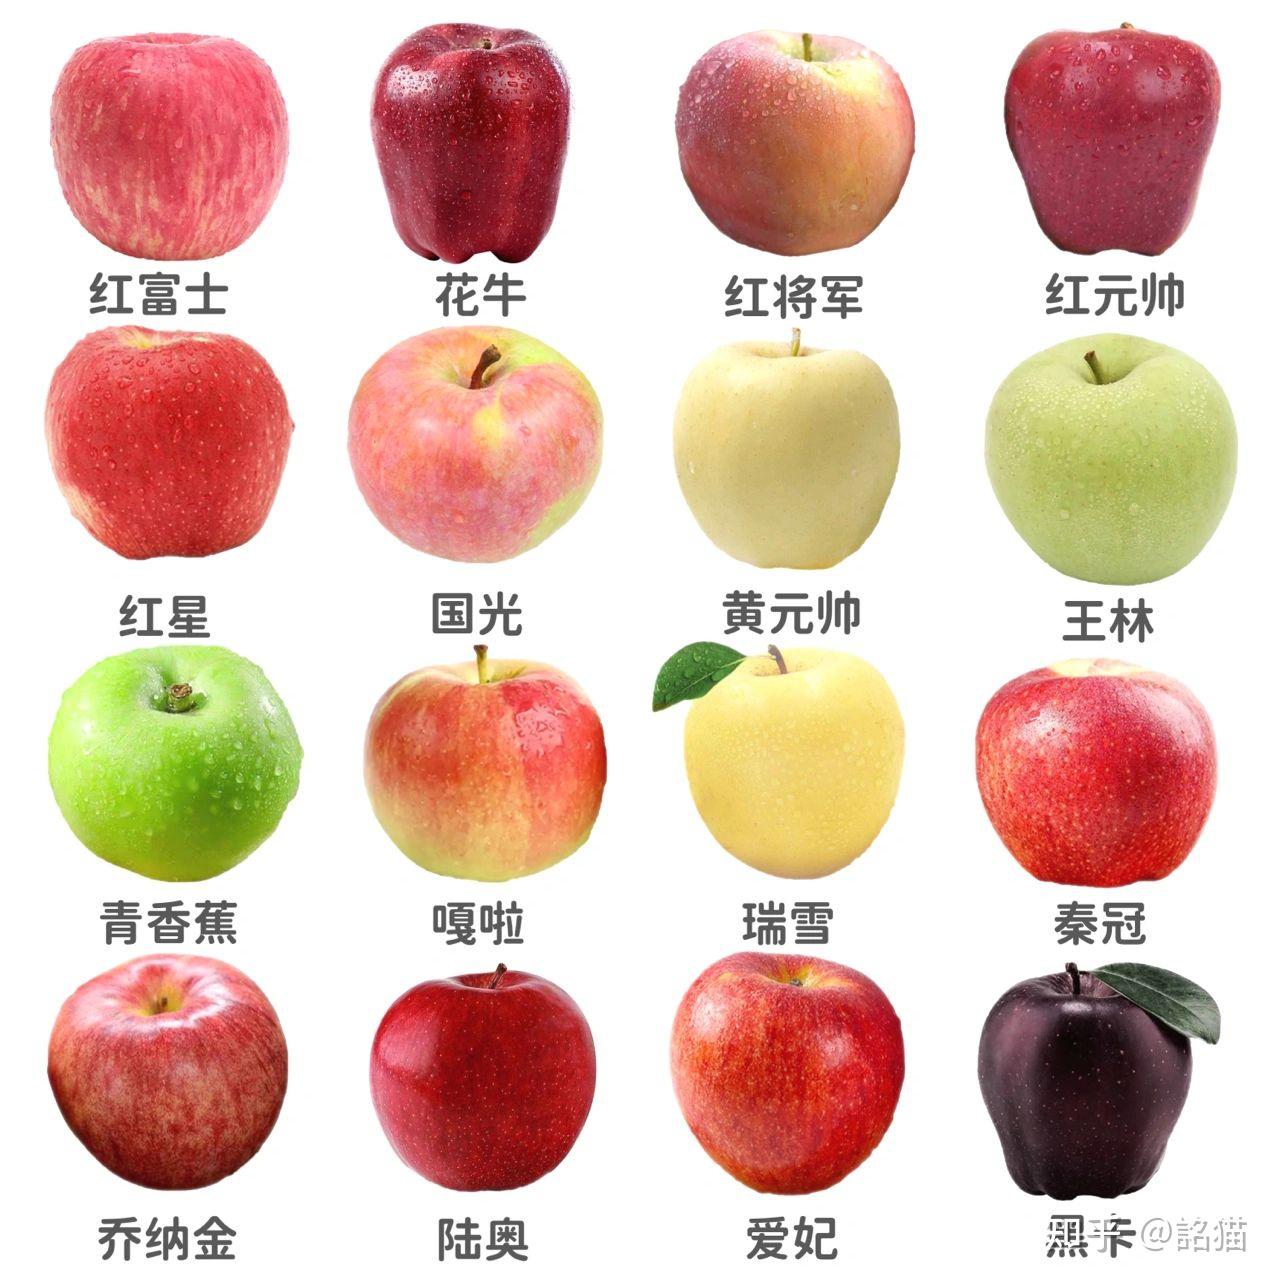 常见苹果的品种与口感【脆甜?面甜?or酸甜?】